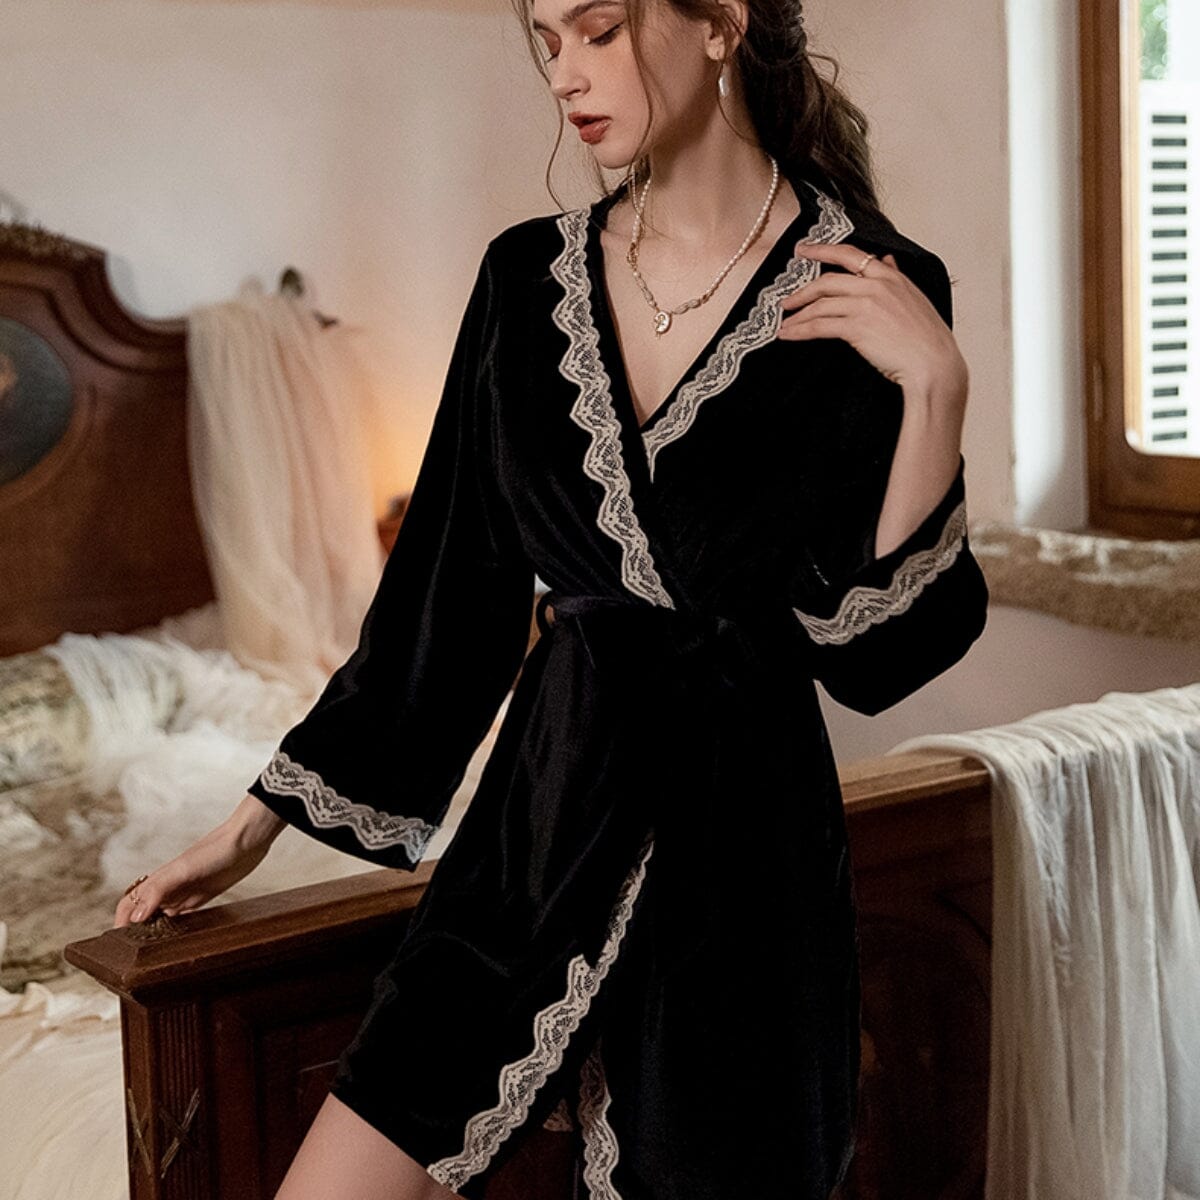 Illie velvet robe Intimates LOVEFREYA Free size Black Velvet